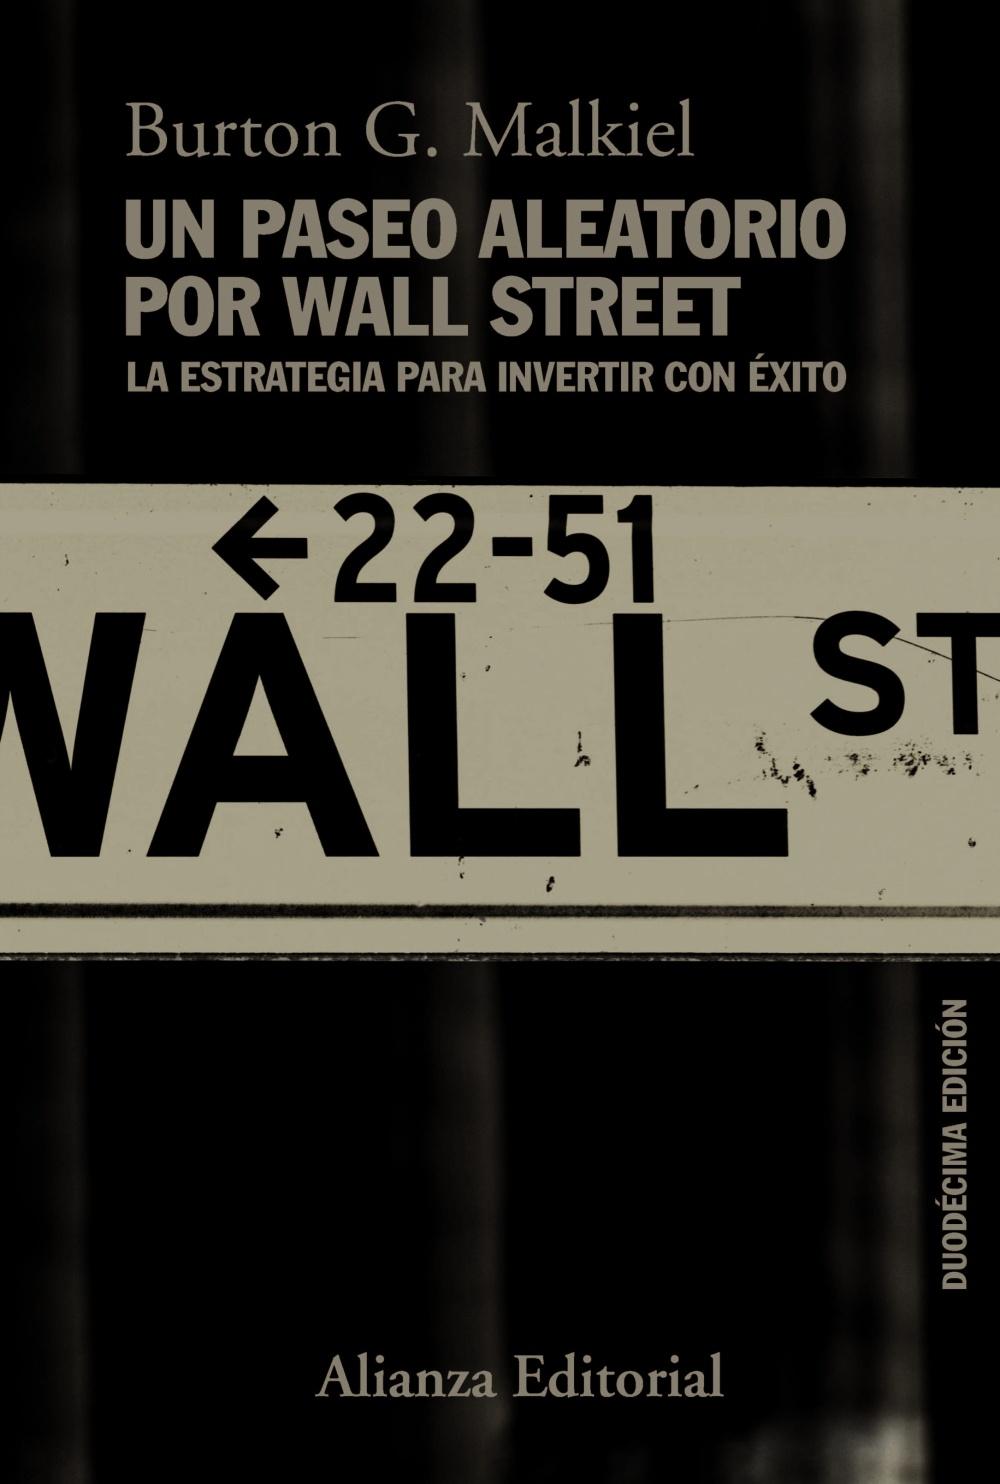 Un paseo aleatorio por Wall Street "La estrategia para invertir con éxito". 